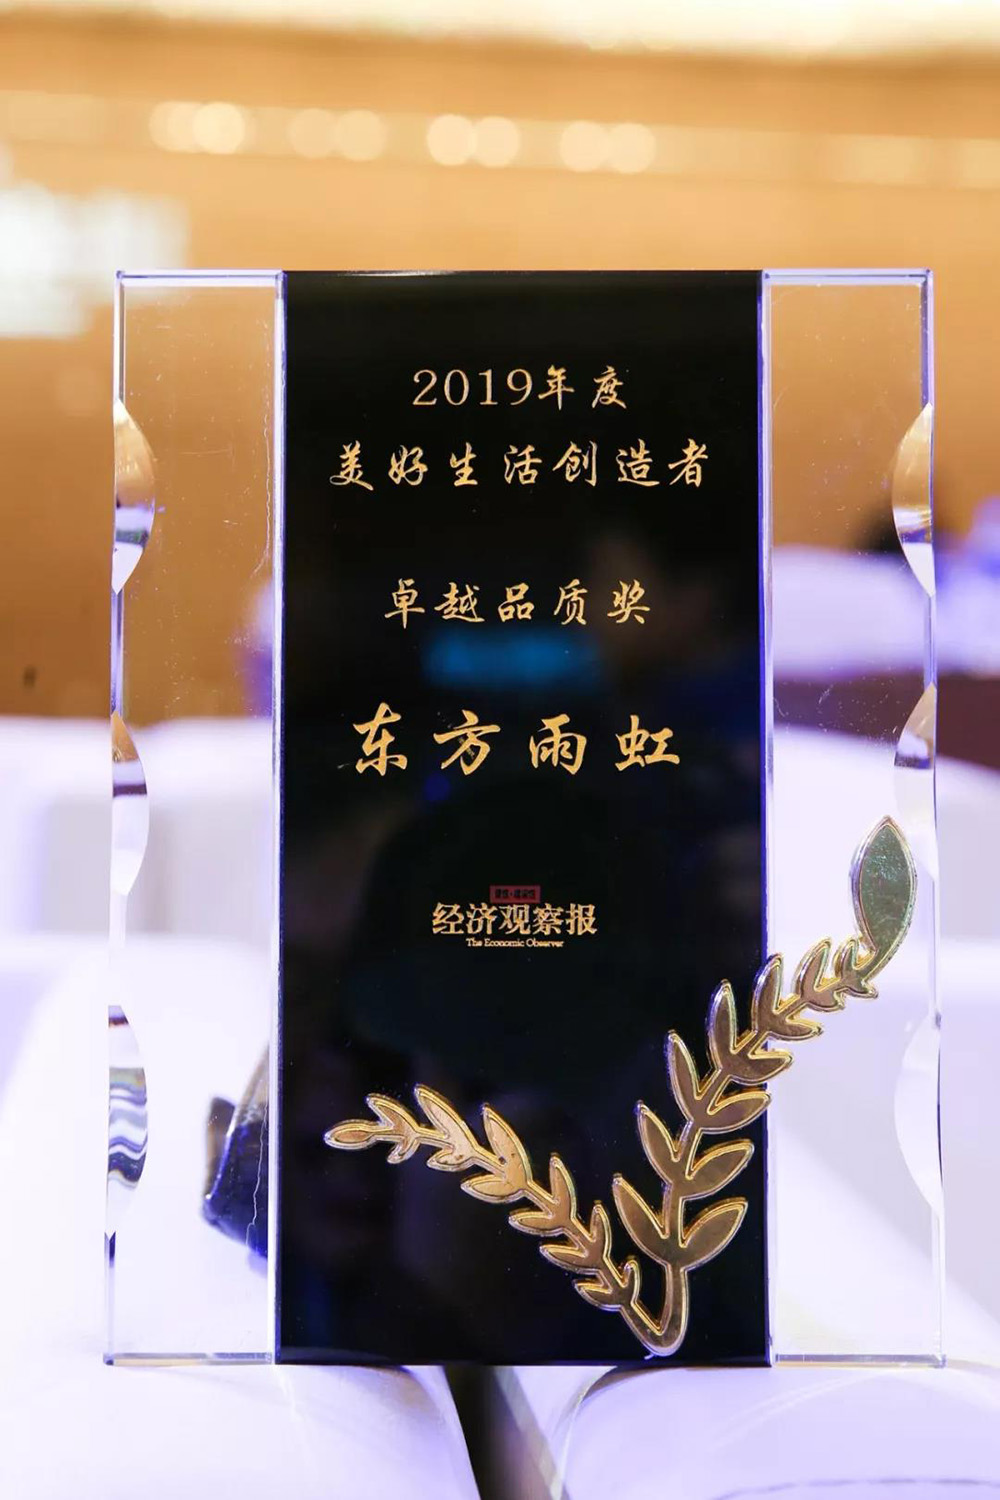 东方雨虹荣获“2019年度美好生活创造者卓越品质奖”